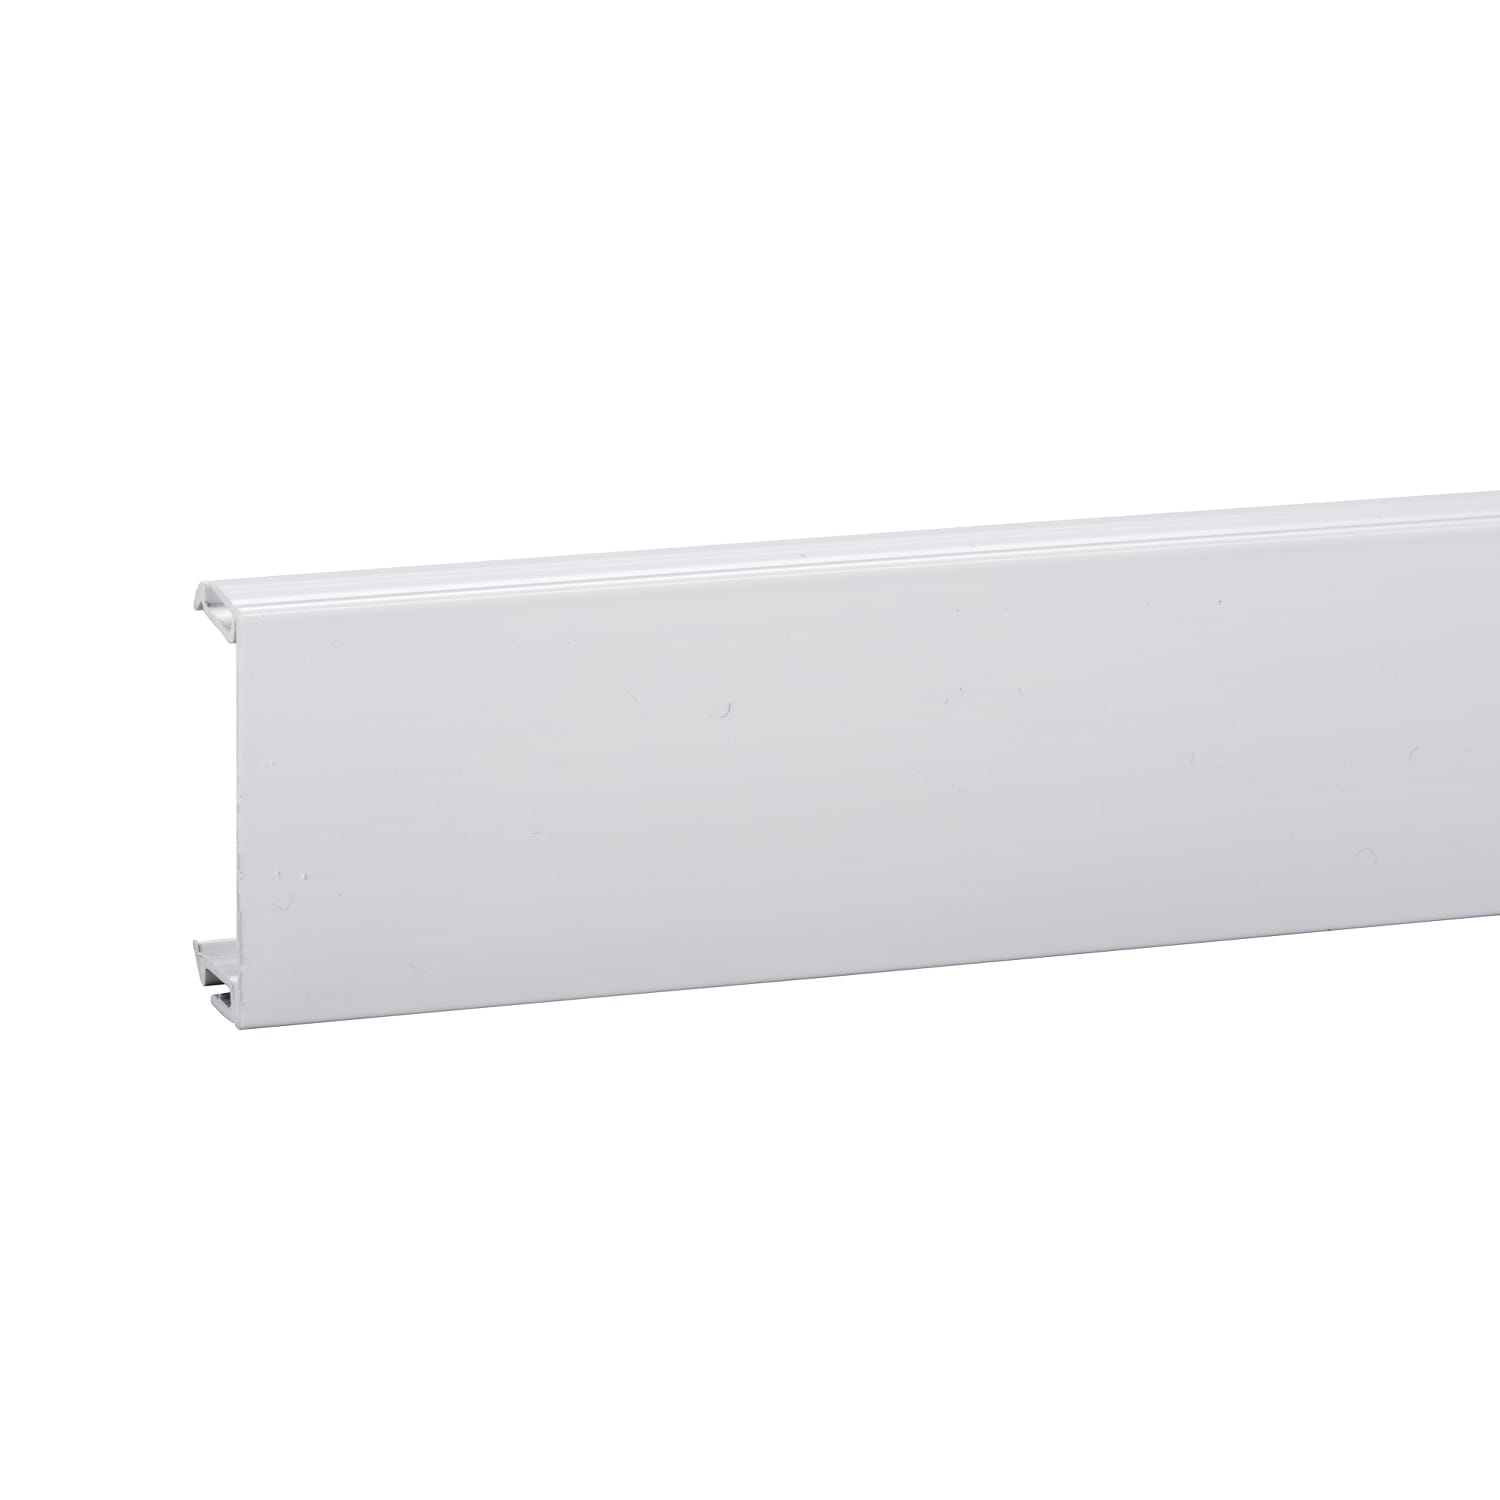 Schneider Electric - OptiLine 45 - couvercle PVC blanc pr goulotte - 45x16x2000mm - au metre lineair